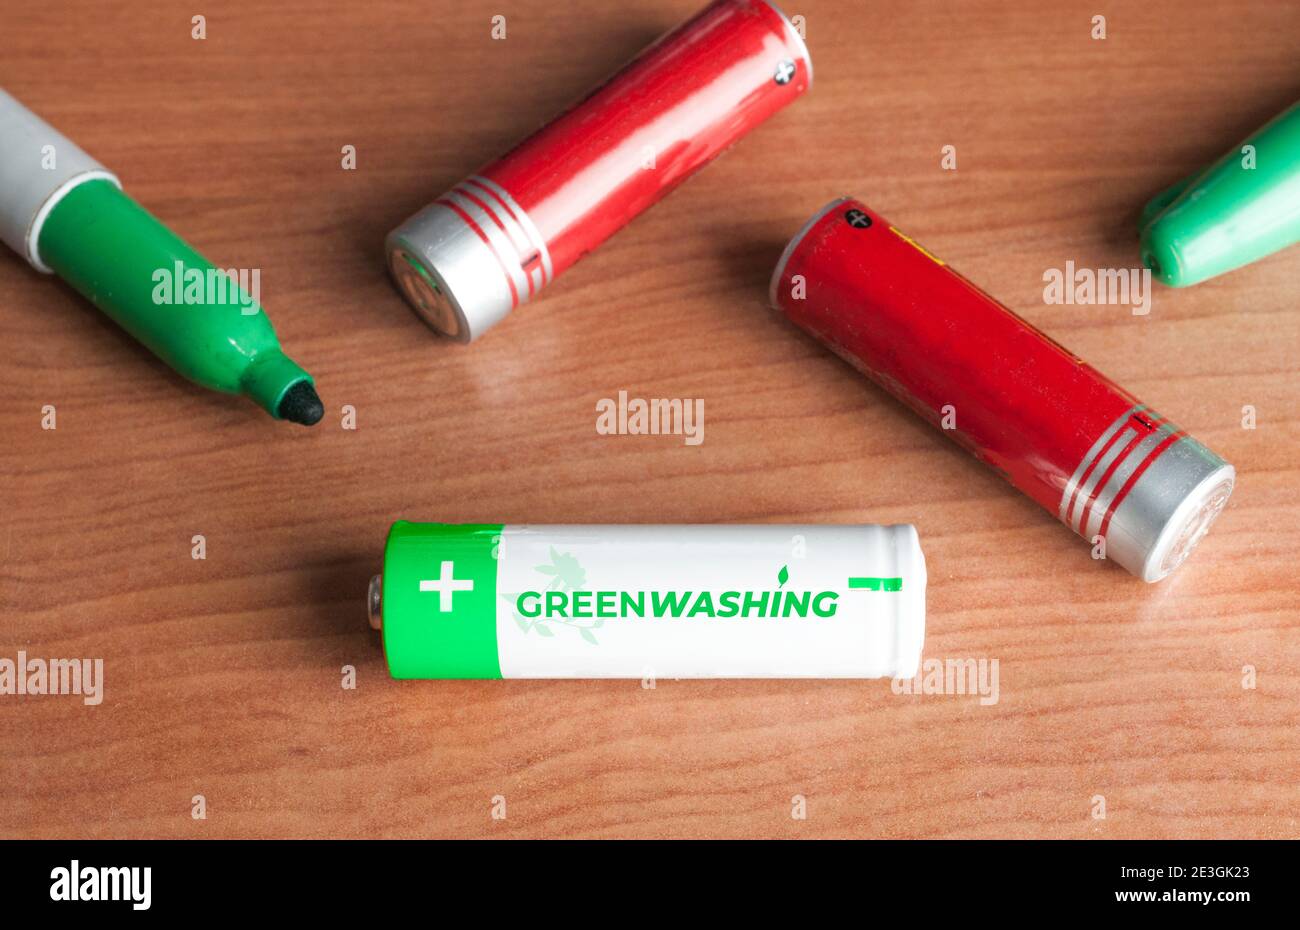 Greenwashing-Konzept: Einige Batterien und ein grüner Marker auf einem Holztisch. Greenwashing ist eine Kommunikationstechnik, die darauf abzielt, ein falsches Bild zu erstellen Stockfoto